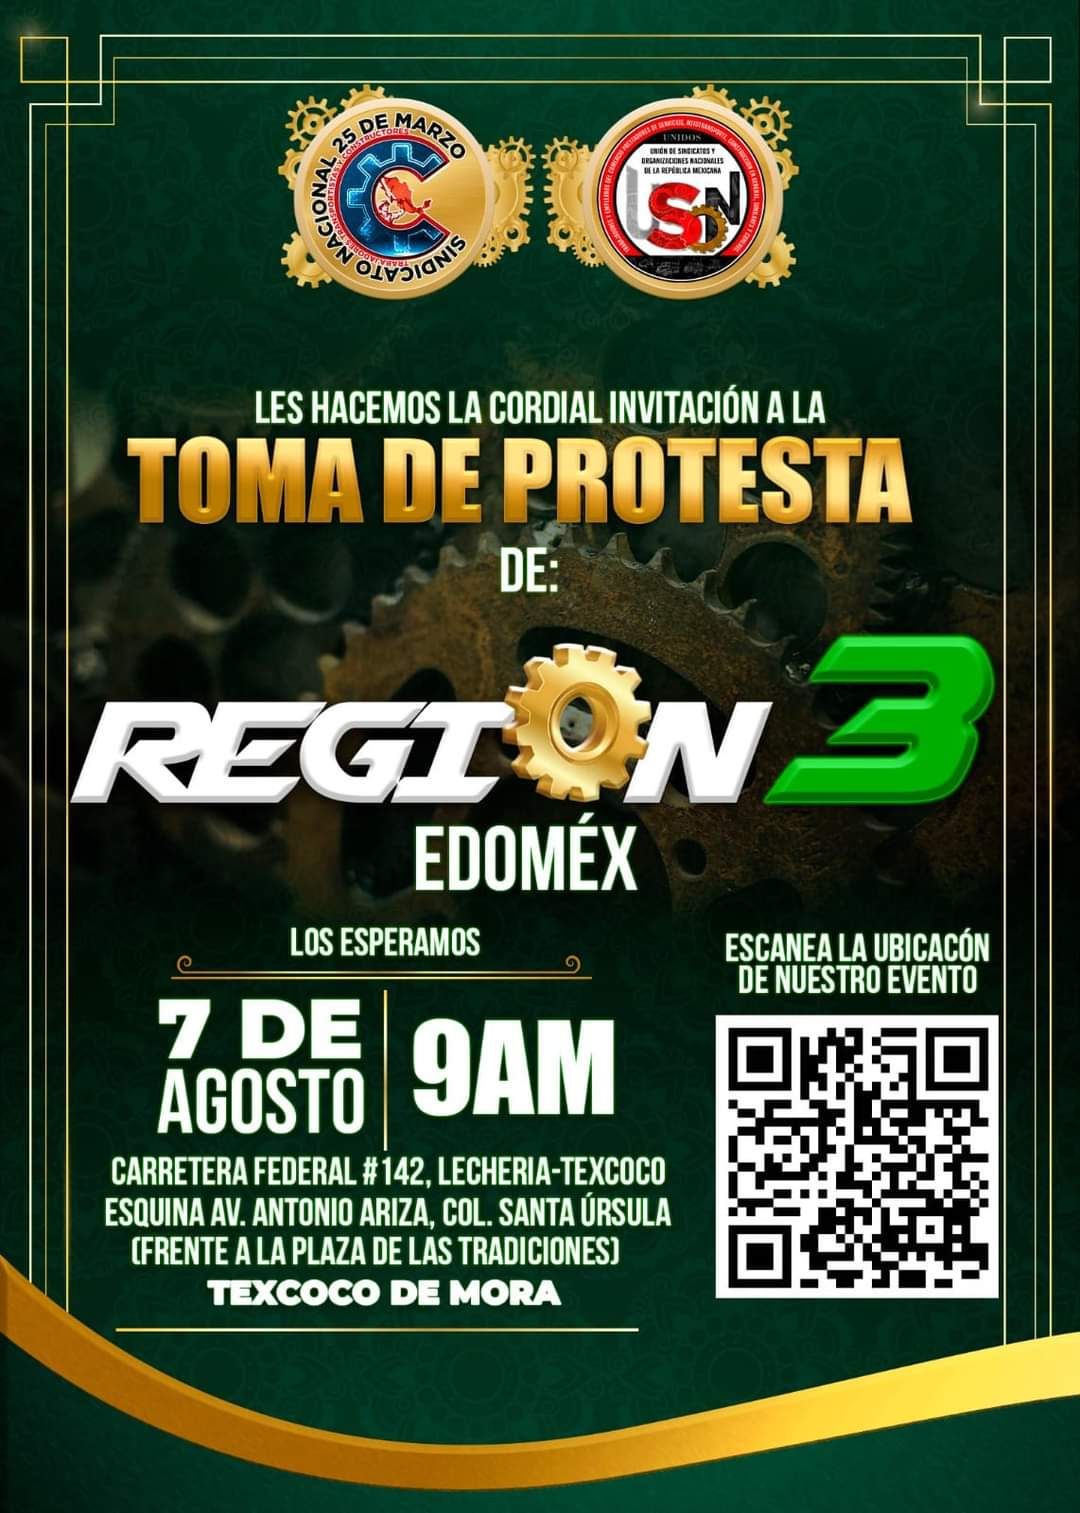 Transportistas Región 3 edomex Tomarán protesta este 7 de Agosto en Texcoco.